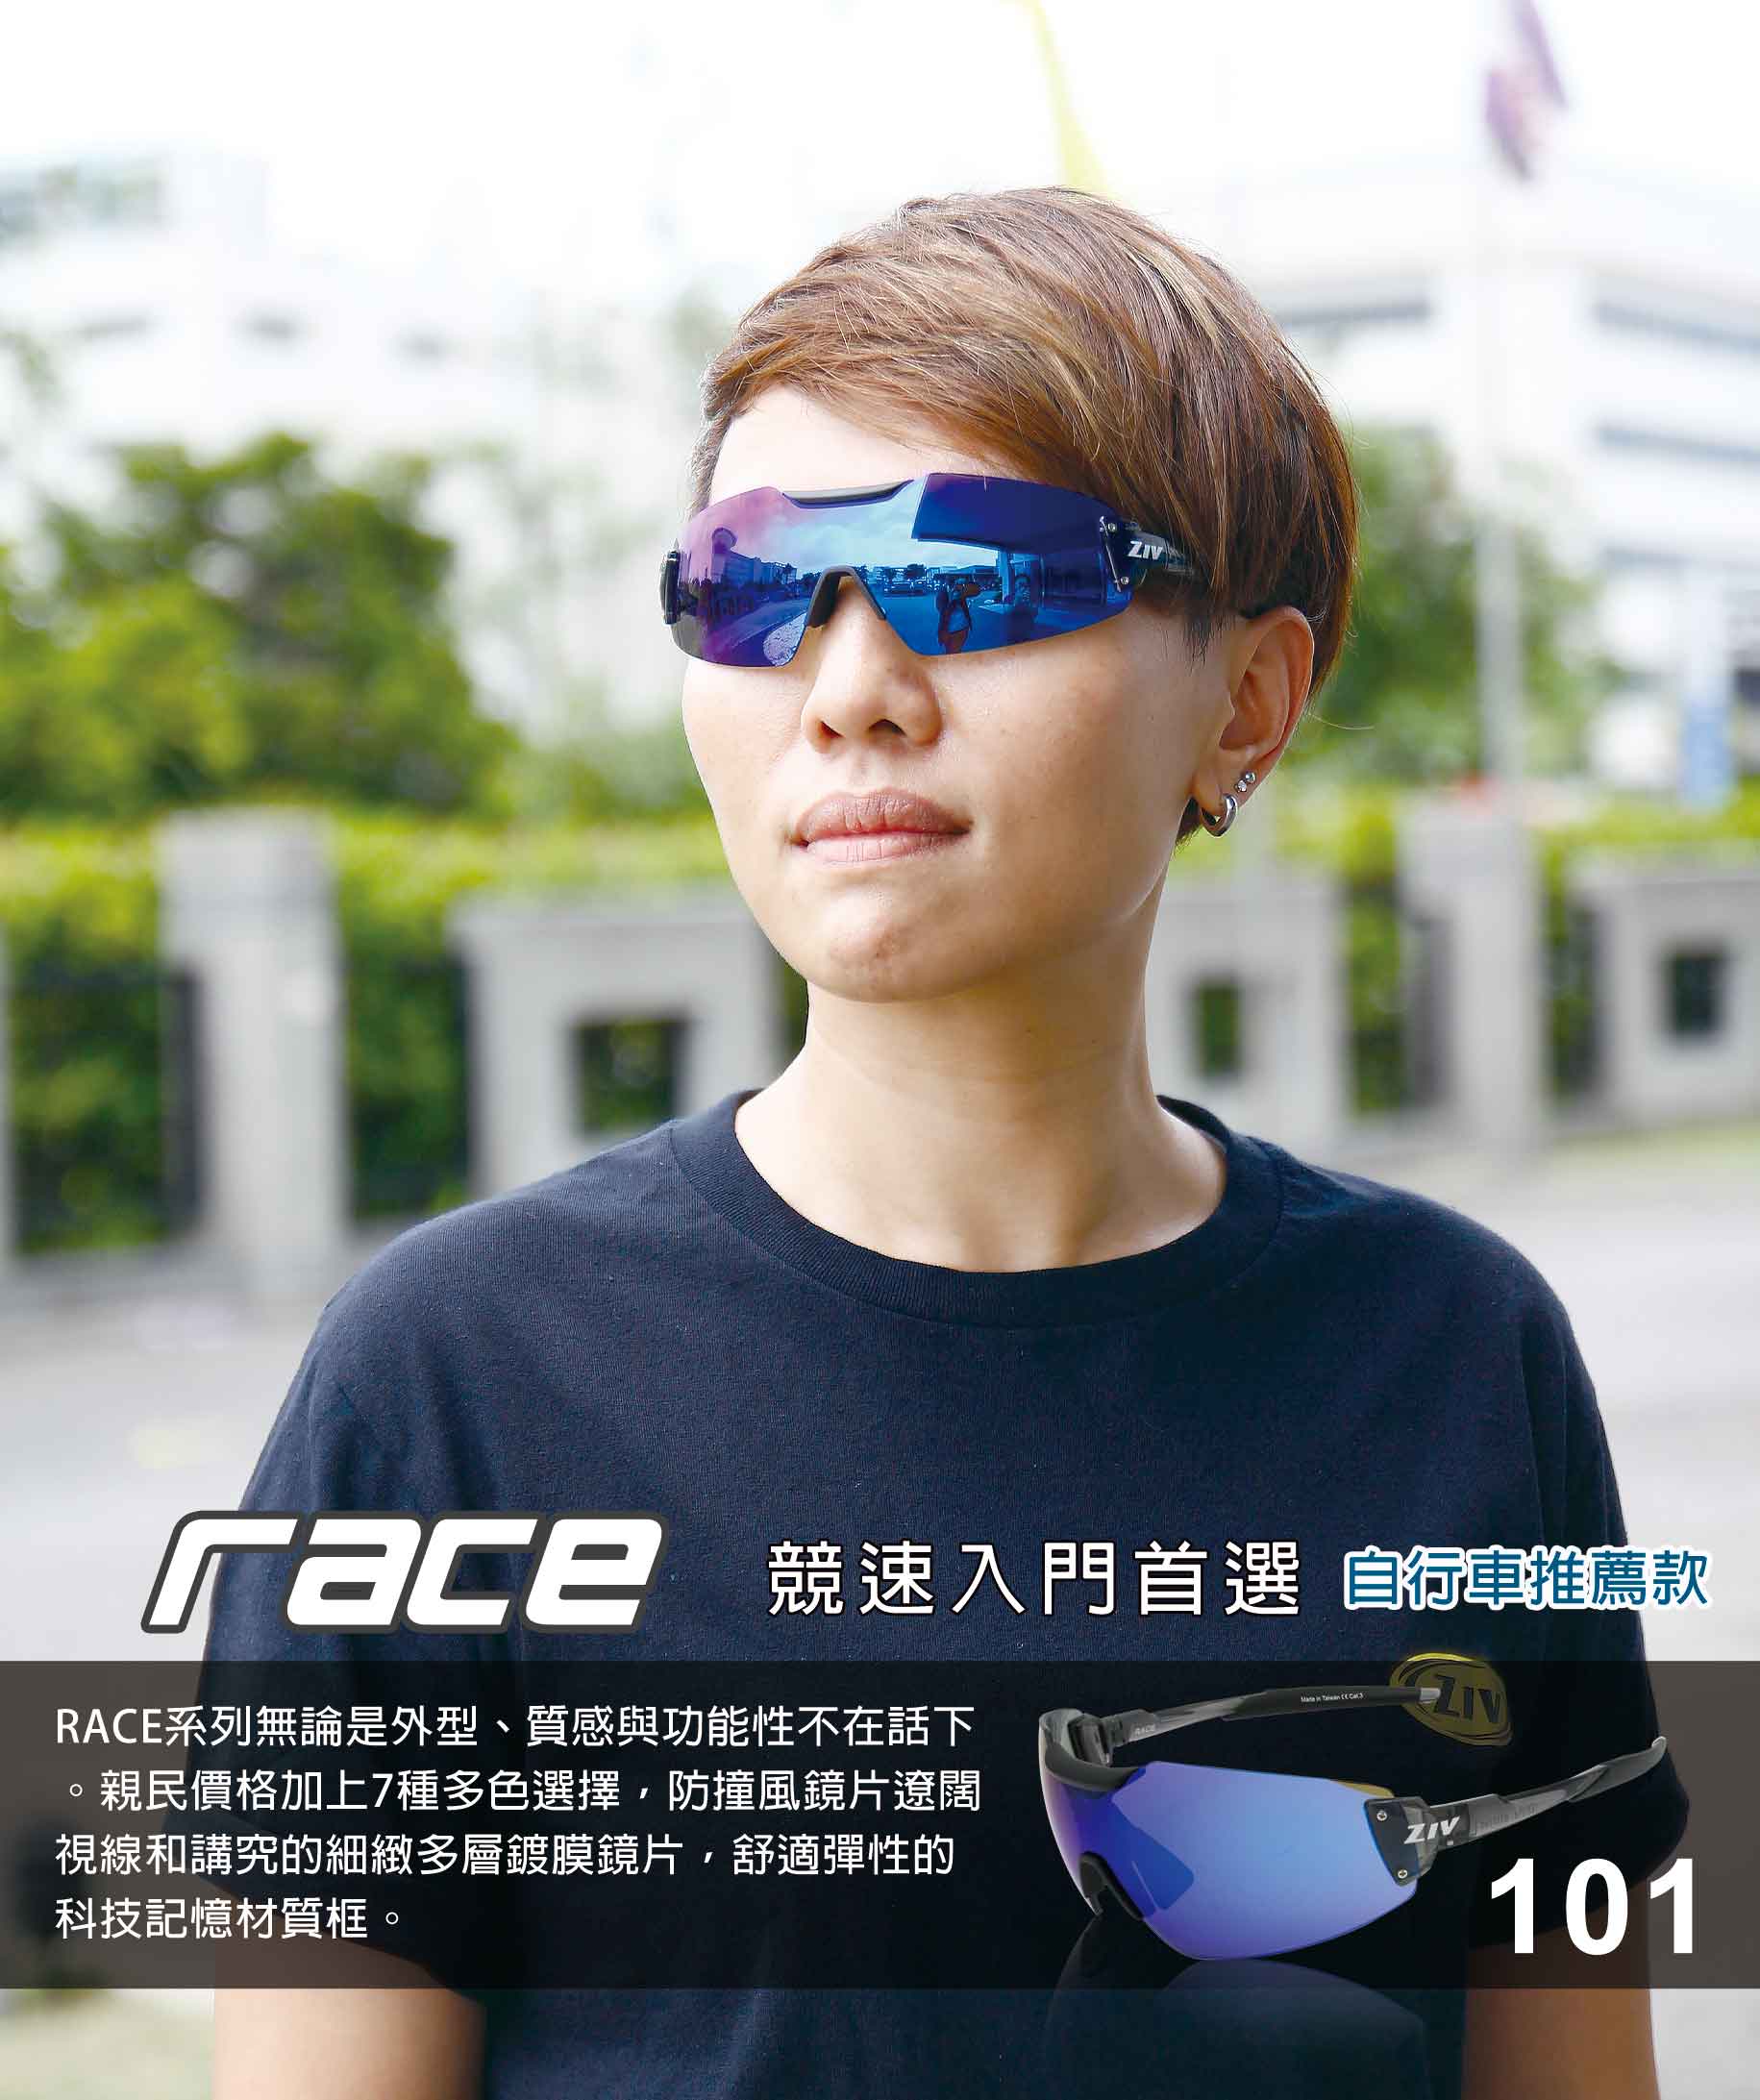 RACE系列-101 亮透明灰